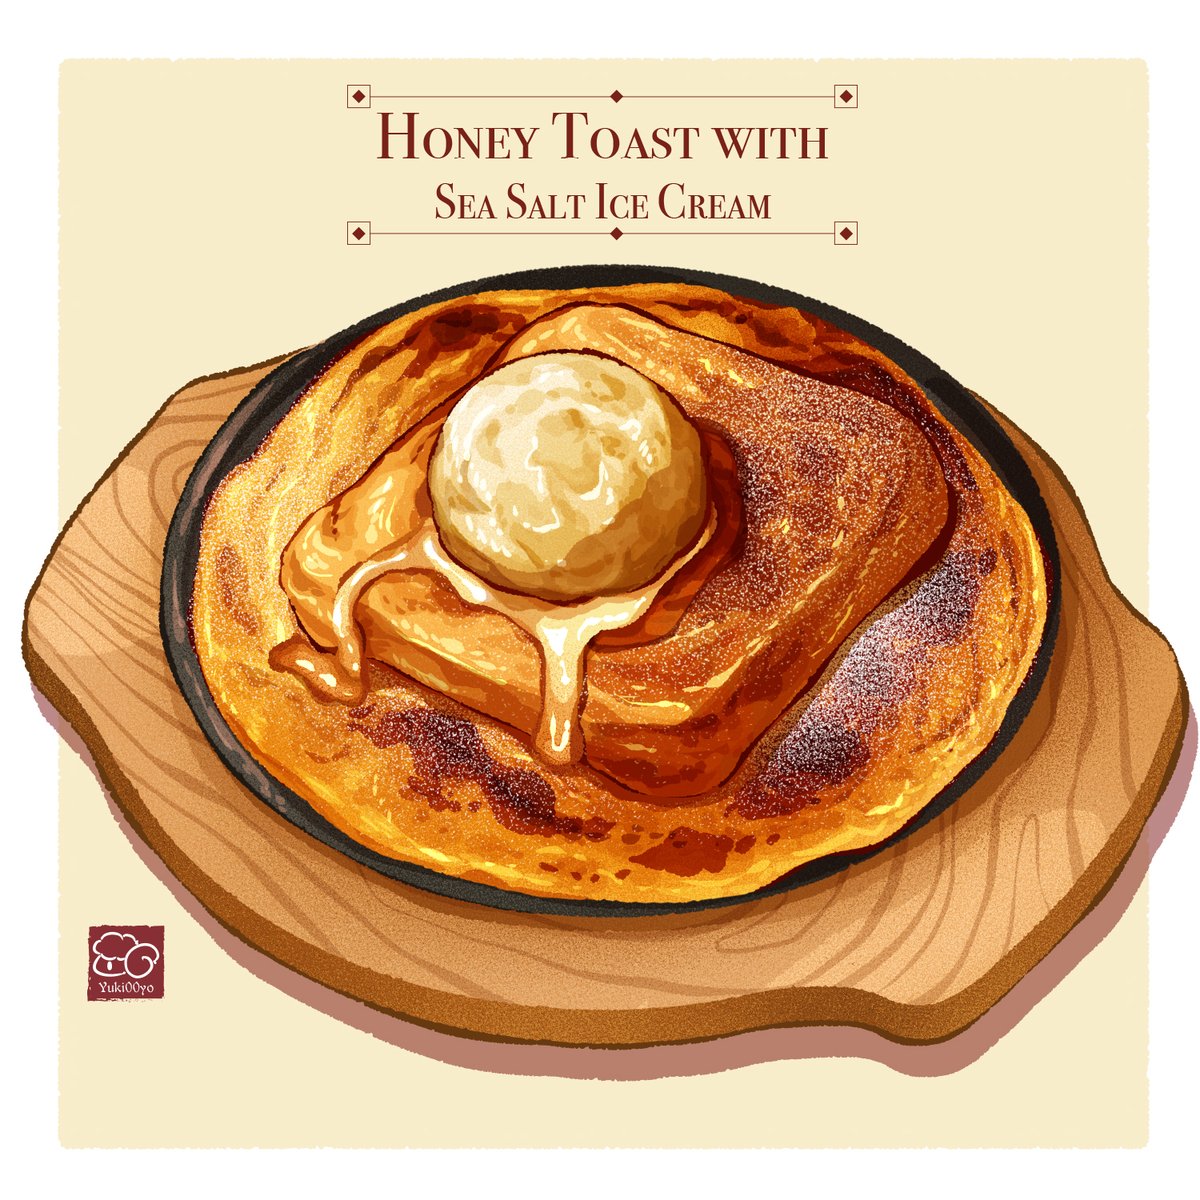 05.16 Honey Toast with Sea Salt Ice Cream 

=================
#foodart #foodillustration
#foodartist
#illustration #絵 #イラスト #dessert
#食べ物イラスト
#美食插畫 #食物繪畫 #ROSIE #toast #honeytoast
#pantoast #海鹽雪糕蜜糖吐司 #吐司 #hkfoodie #hkcafe